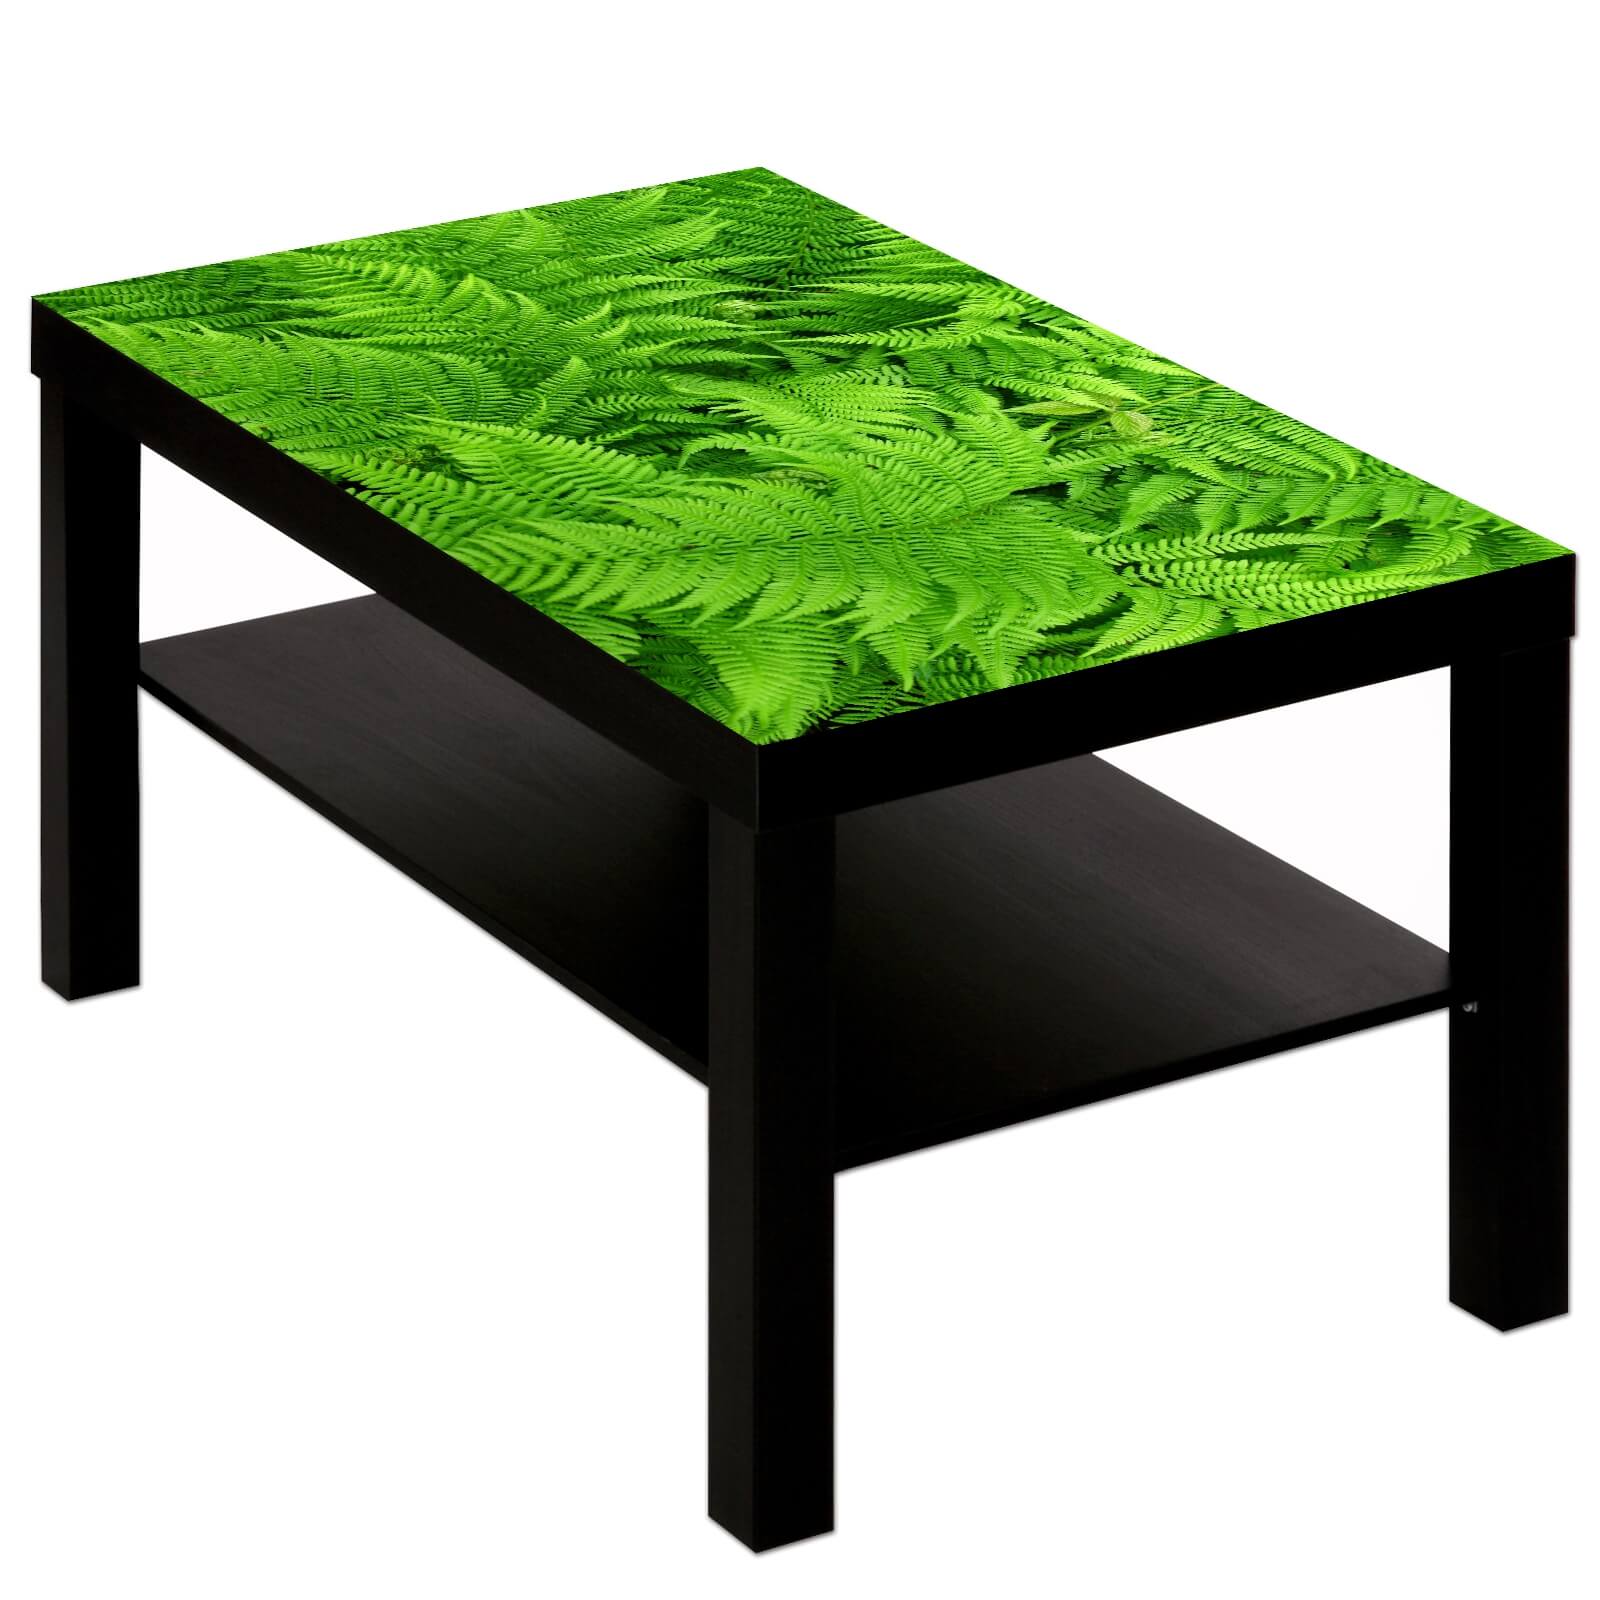 Couchtisch Tisch mit Motiv Bild Natur grün hell Farn Muster